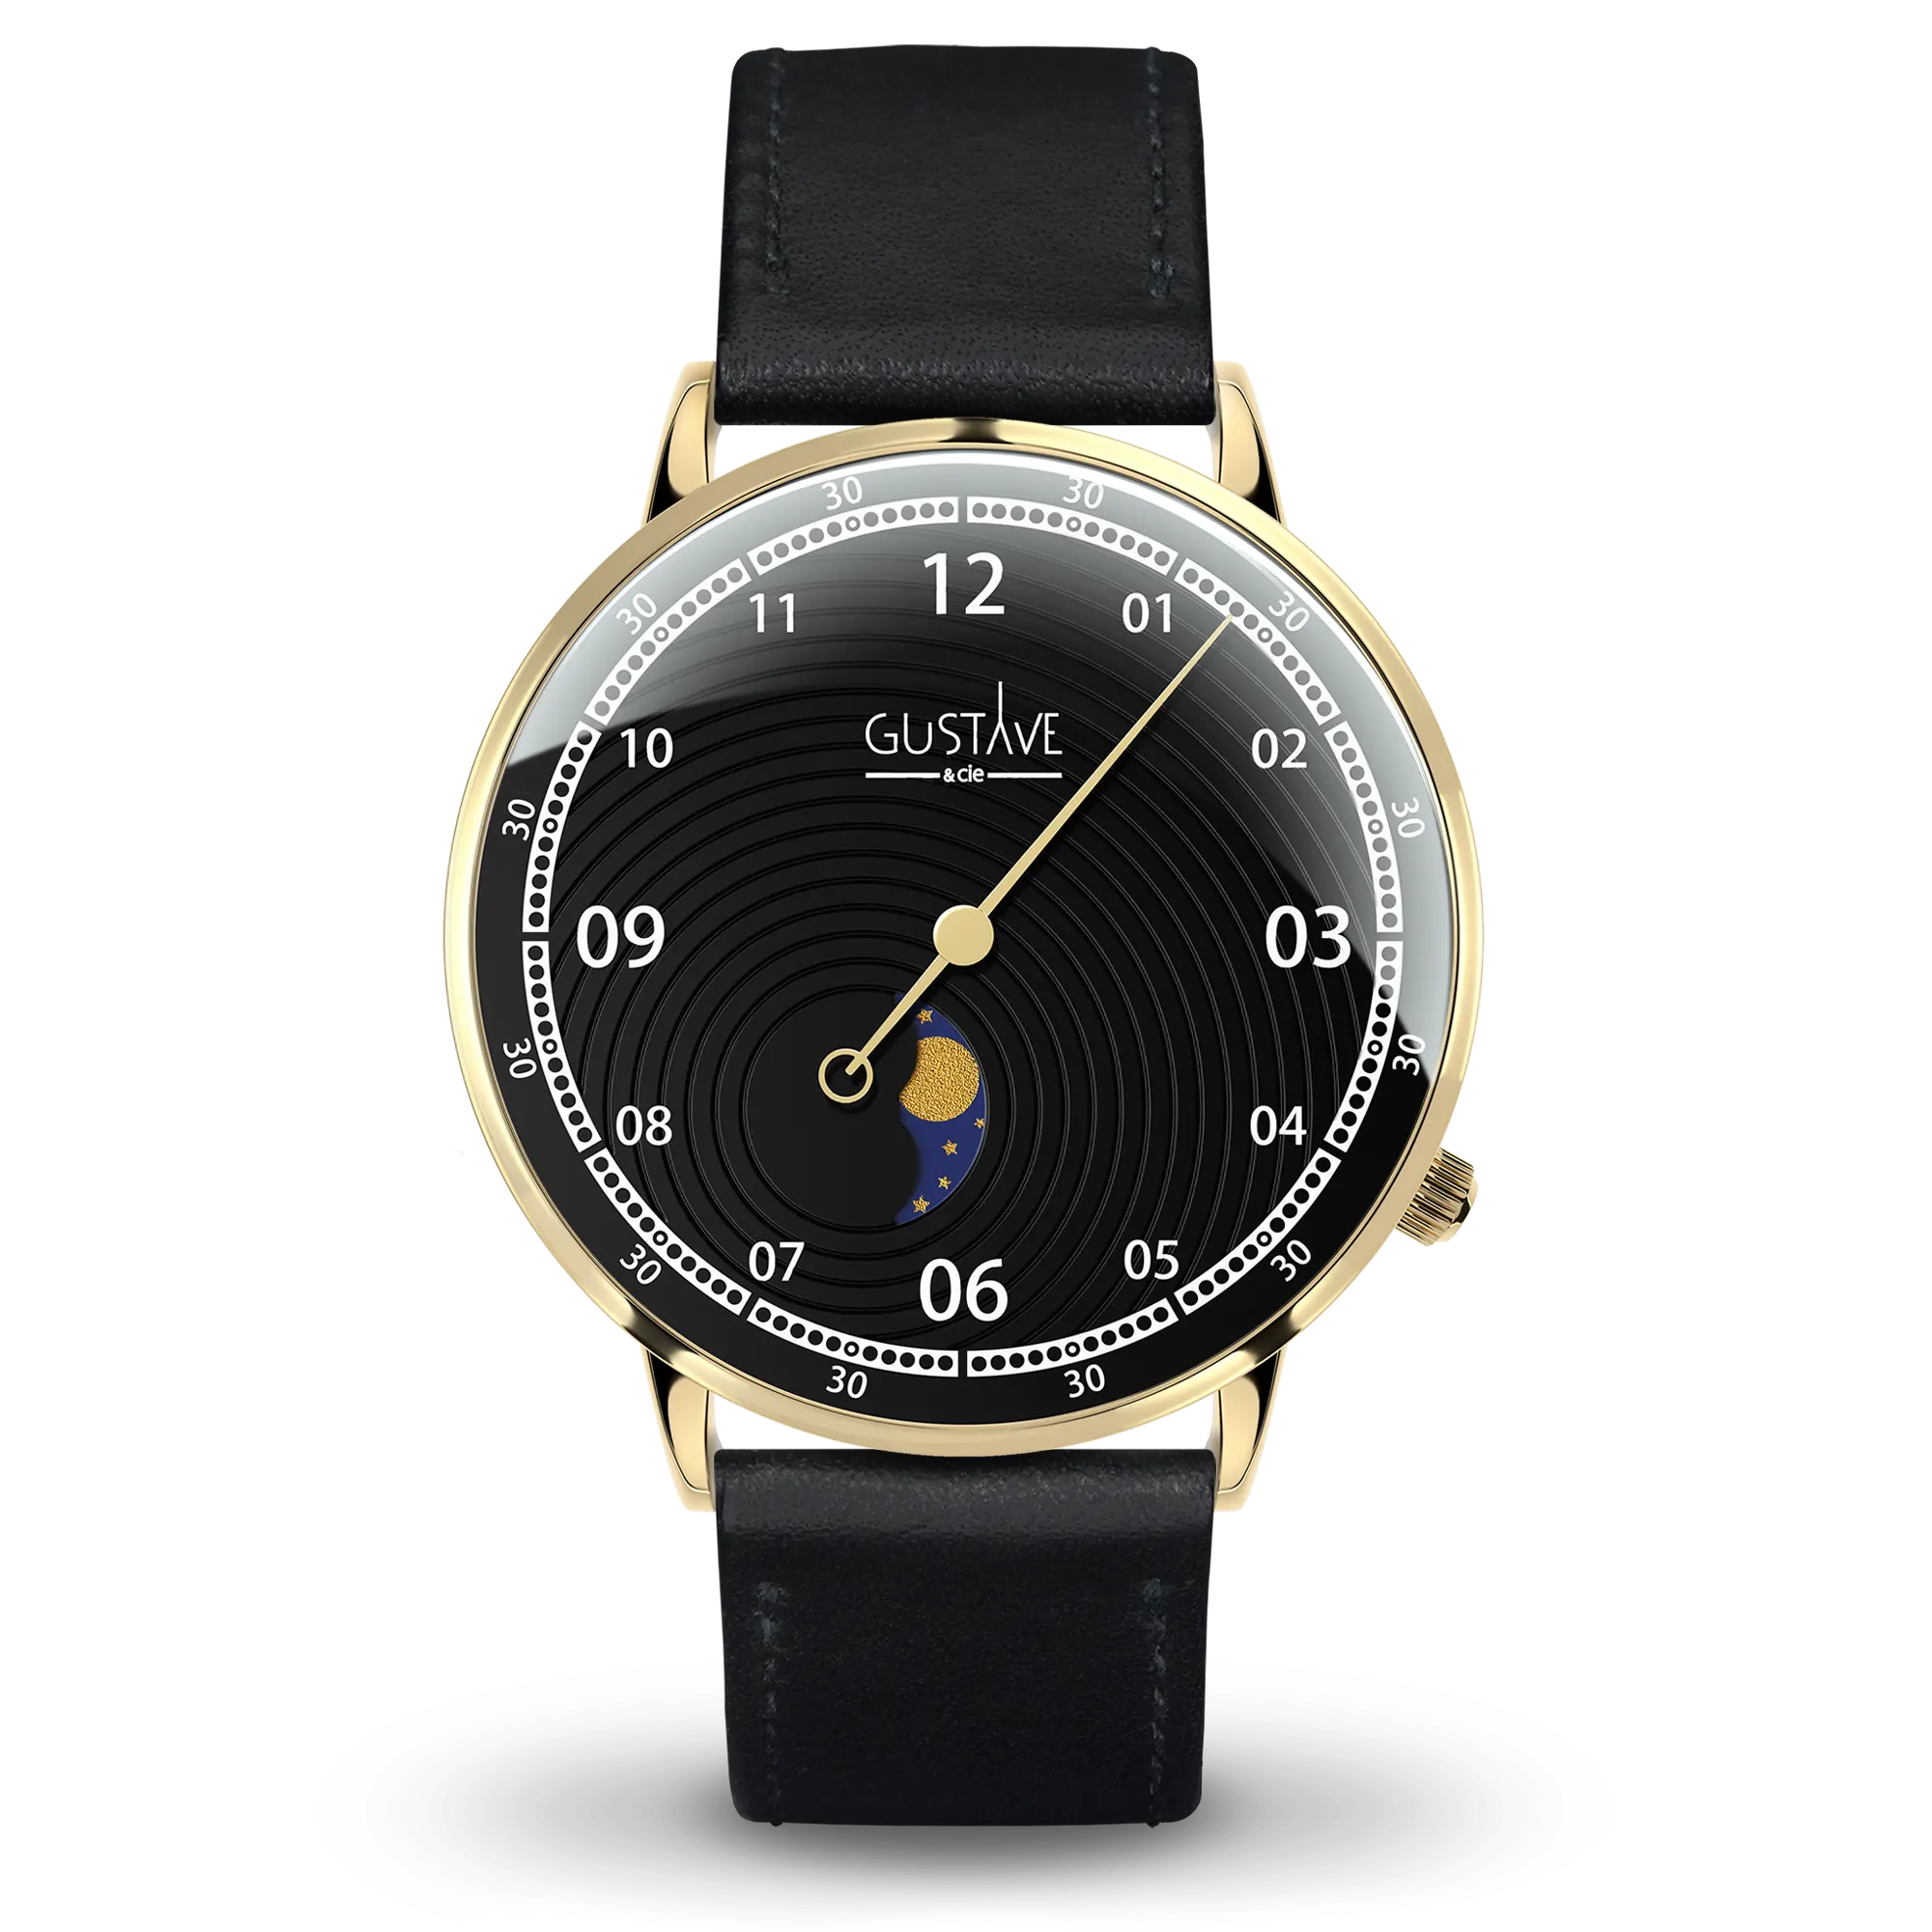 Georges 12H 40mm ouro e relógio preto pulseira de couro preto com costura